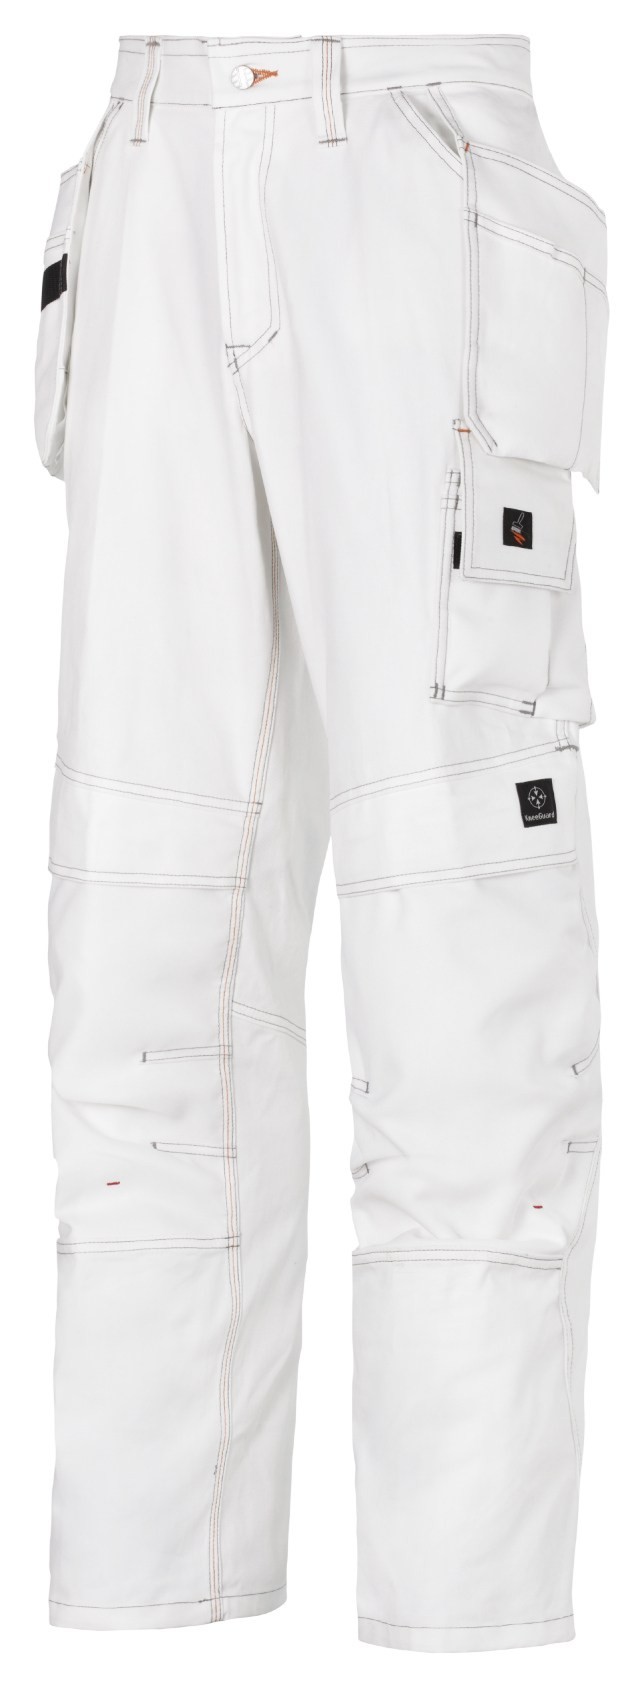 Pantalon de peintre avec poches holster SNICKERS 3275 Série 3